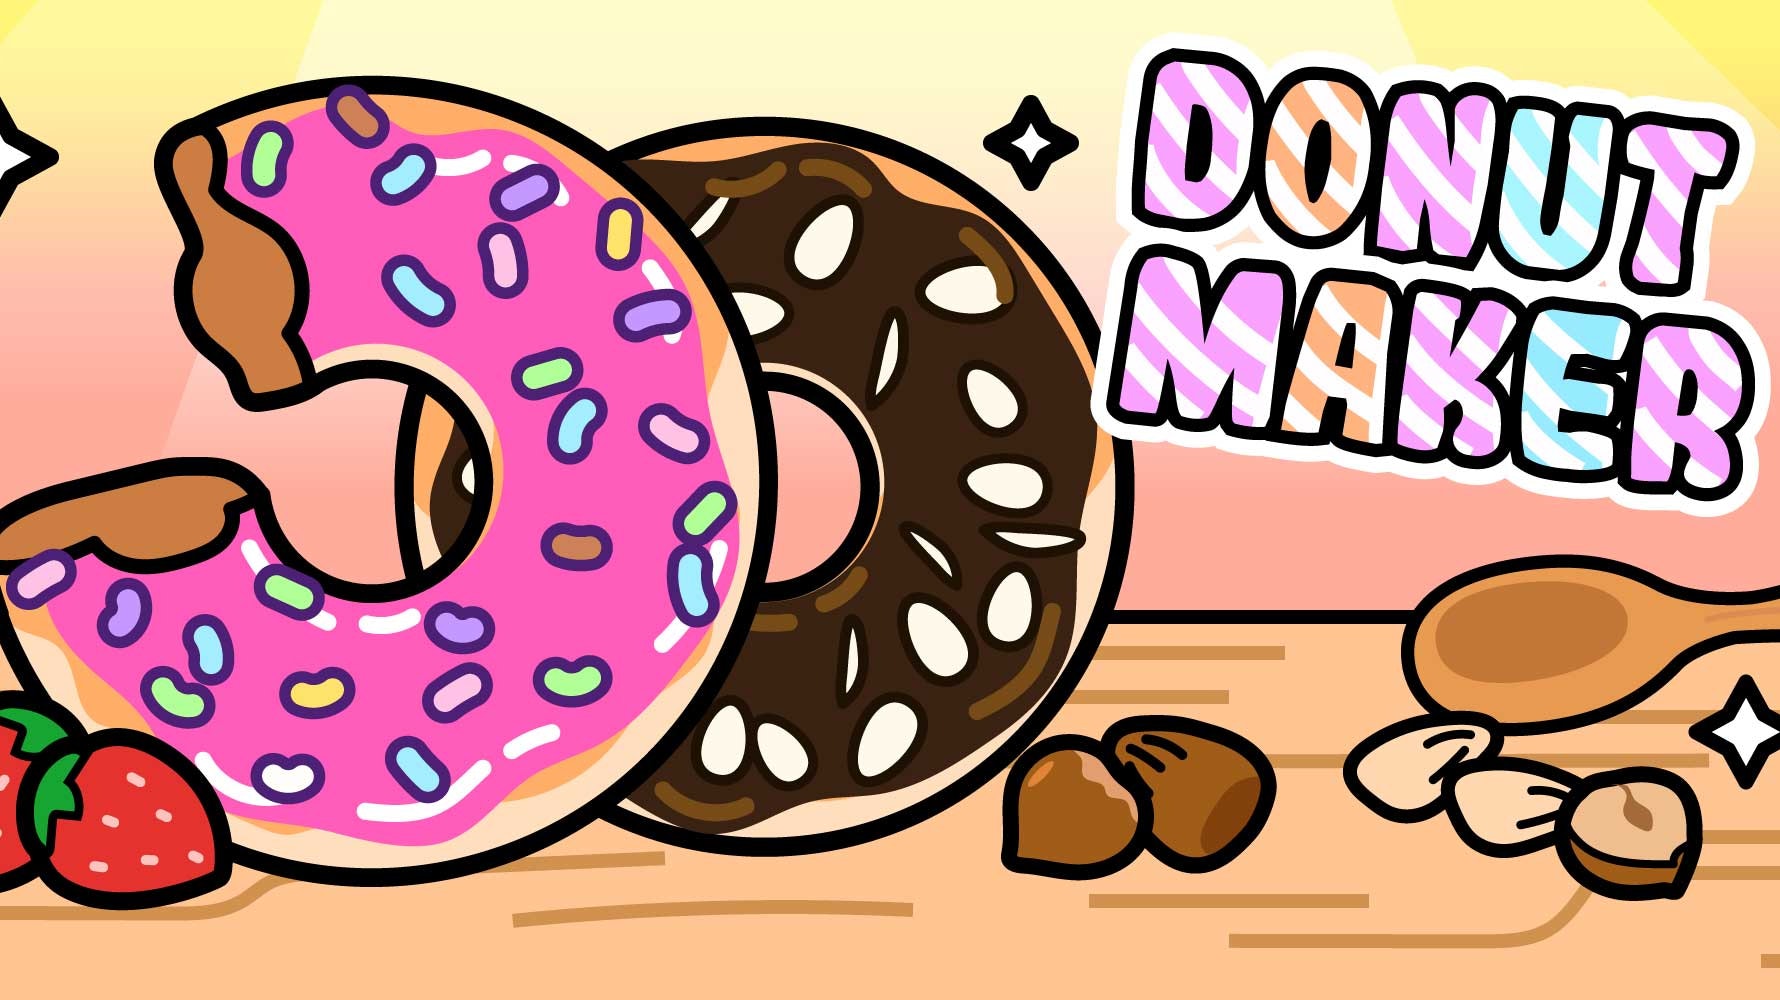 https://images.crazygames.com/donut-maker-cooking-game/20230809101124/donut-maker-cooking-game-cover?auto=format,compress&q=75&cs=strip